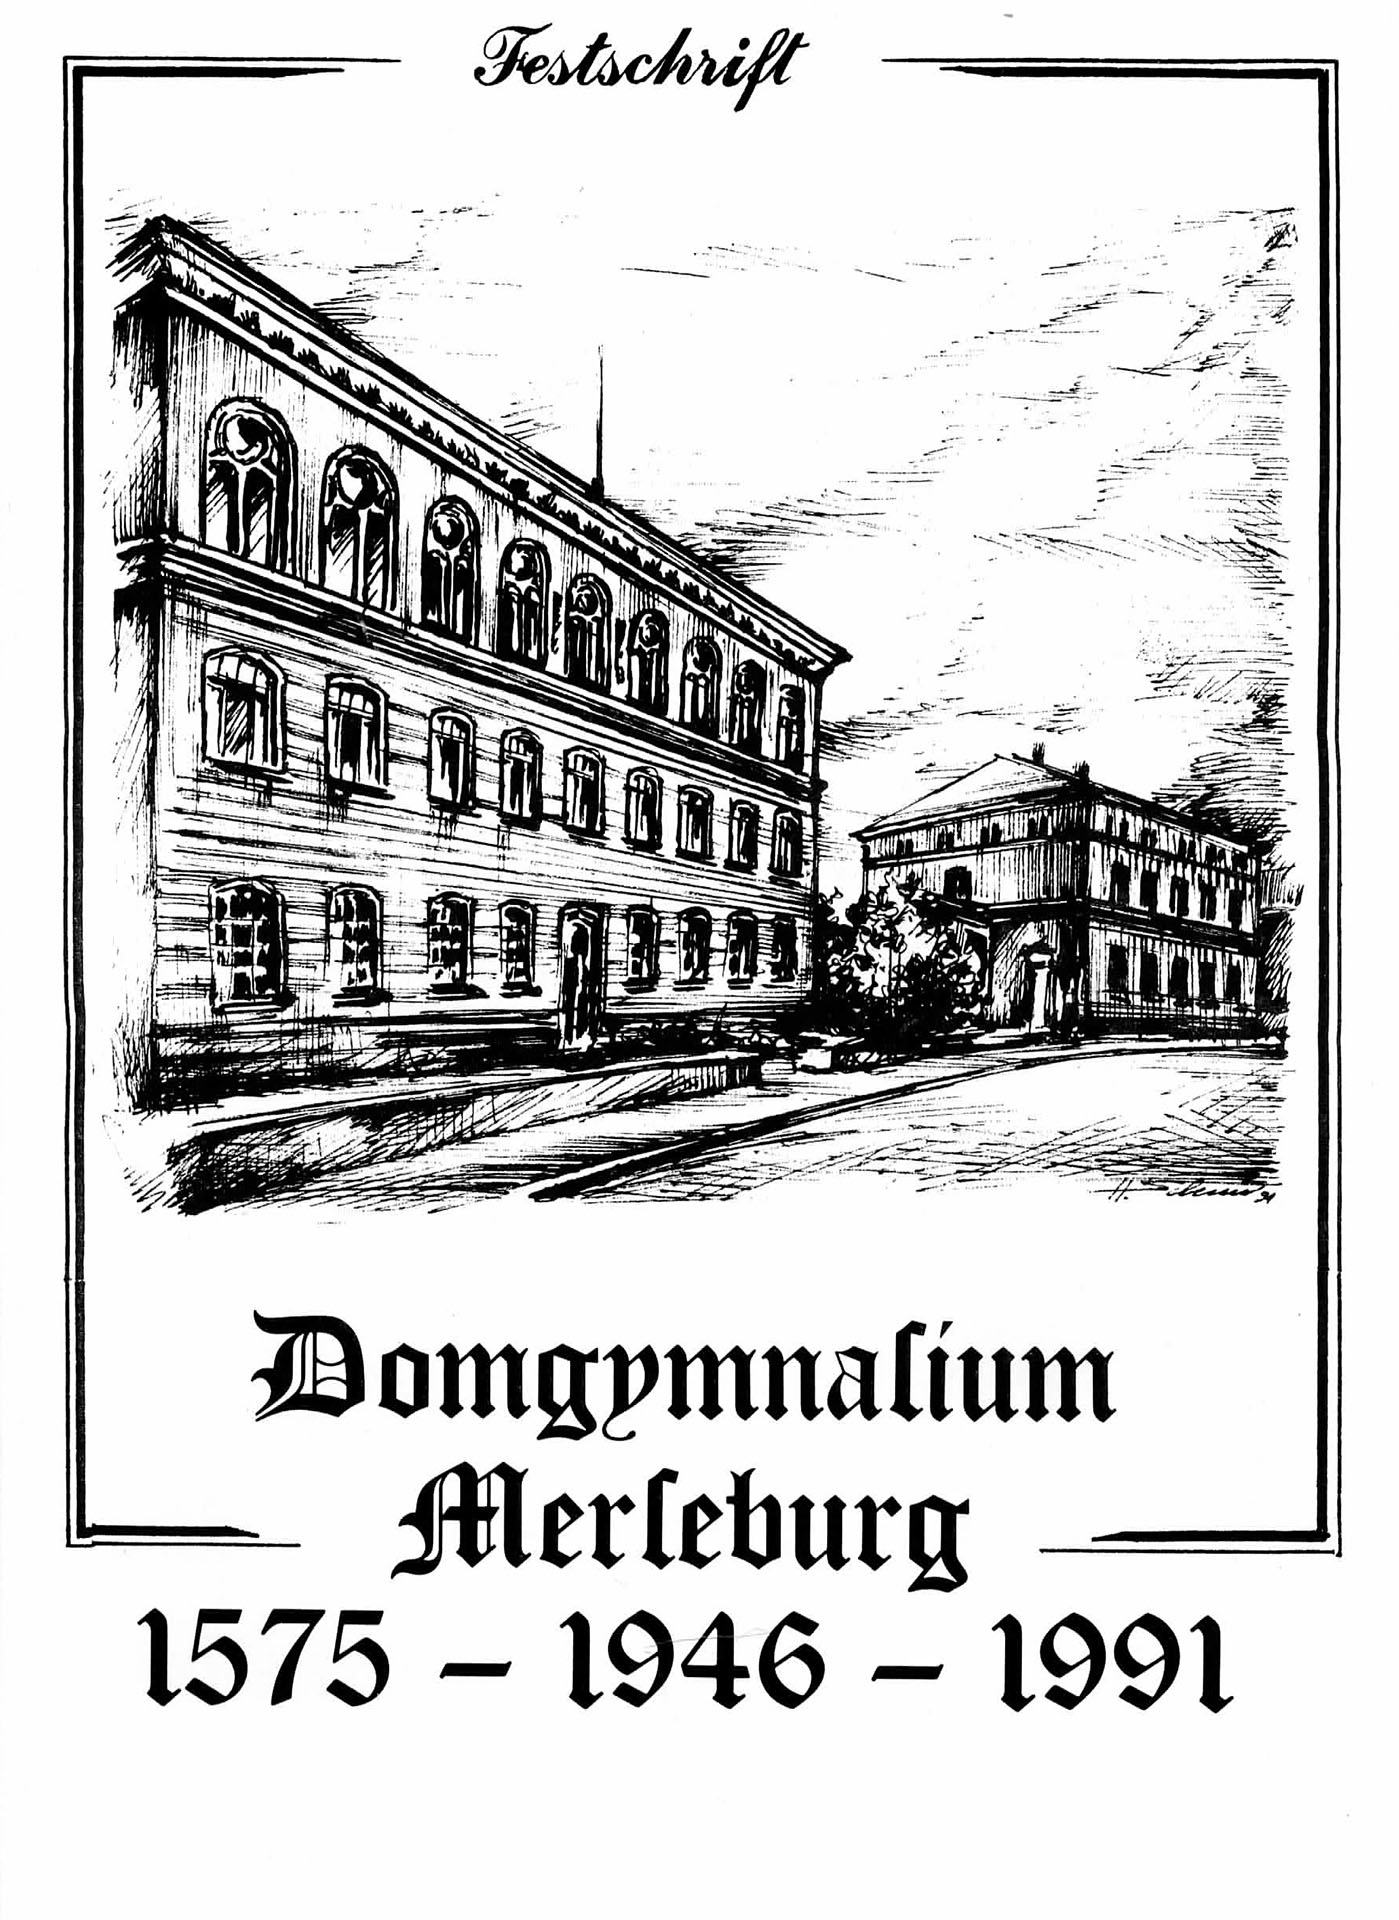 Domgymnasium Merseburg - Festschrift 1575 - 1946 - 1991